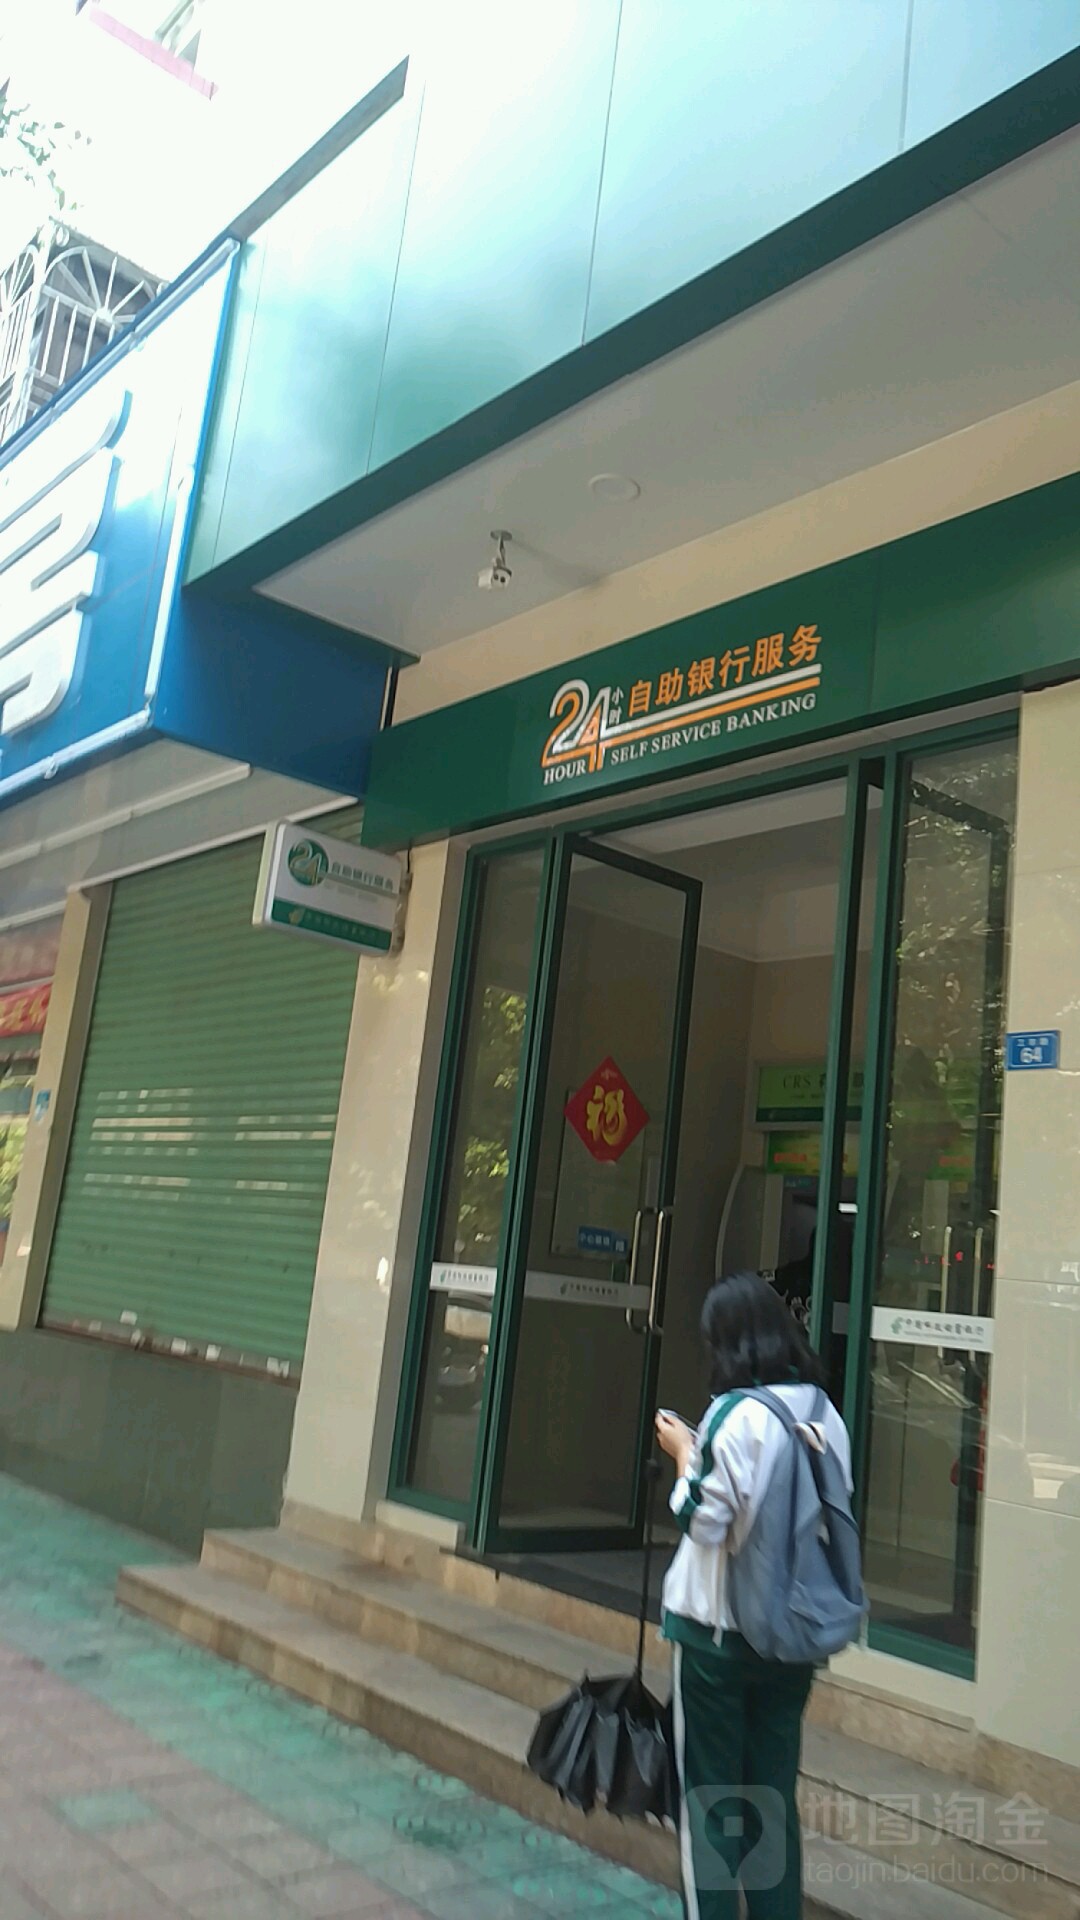 中国邮政储蓄银行ATM(大埔县支行)